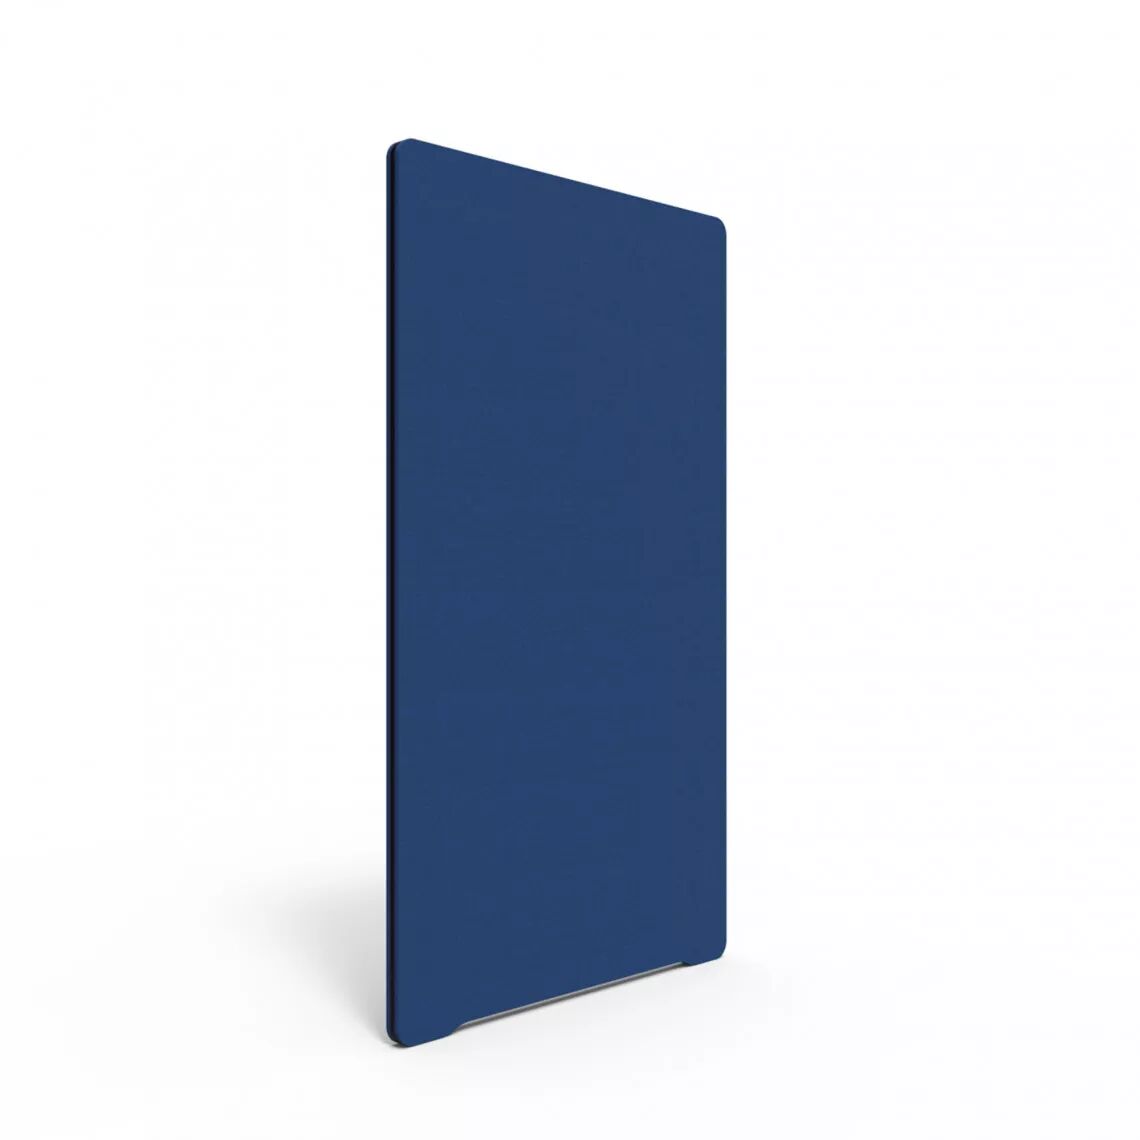 Lintex Cloison acoustique auto-portante en tissu Edge Floor, Couleur Reedfish YA309 - Bleu, Taille L100 x H180 cm, Palete Noir